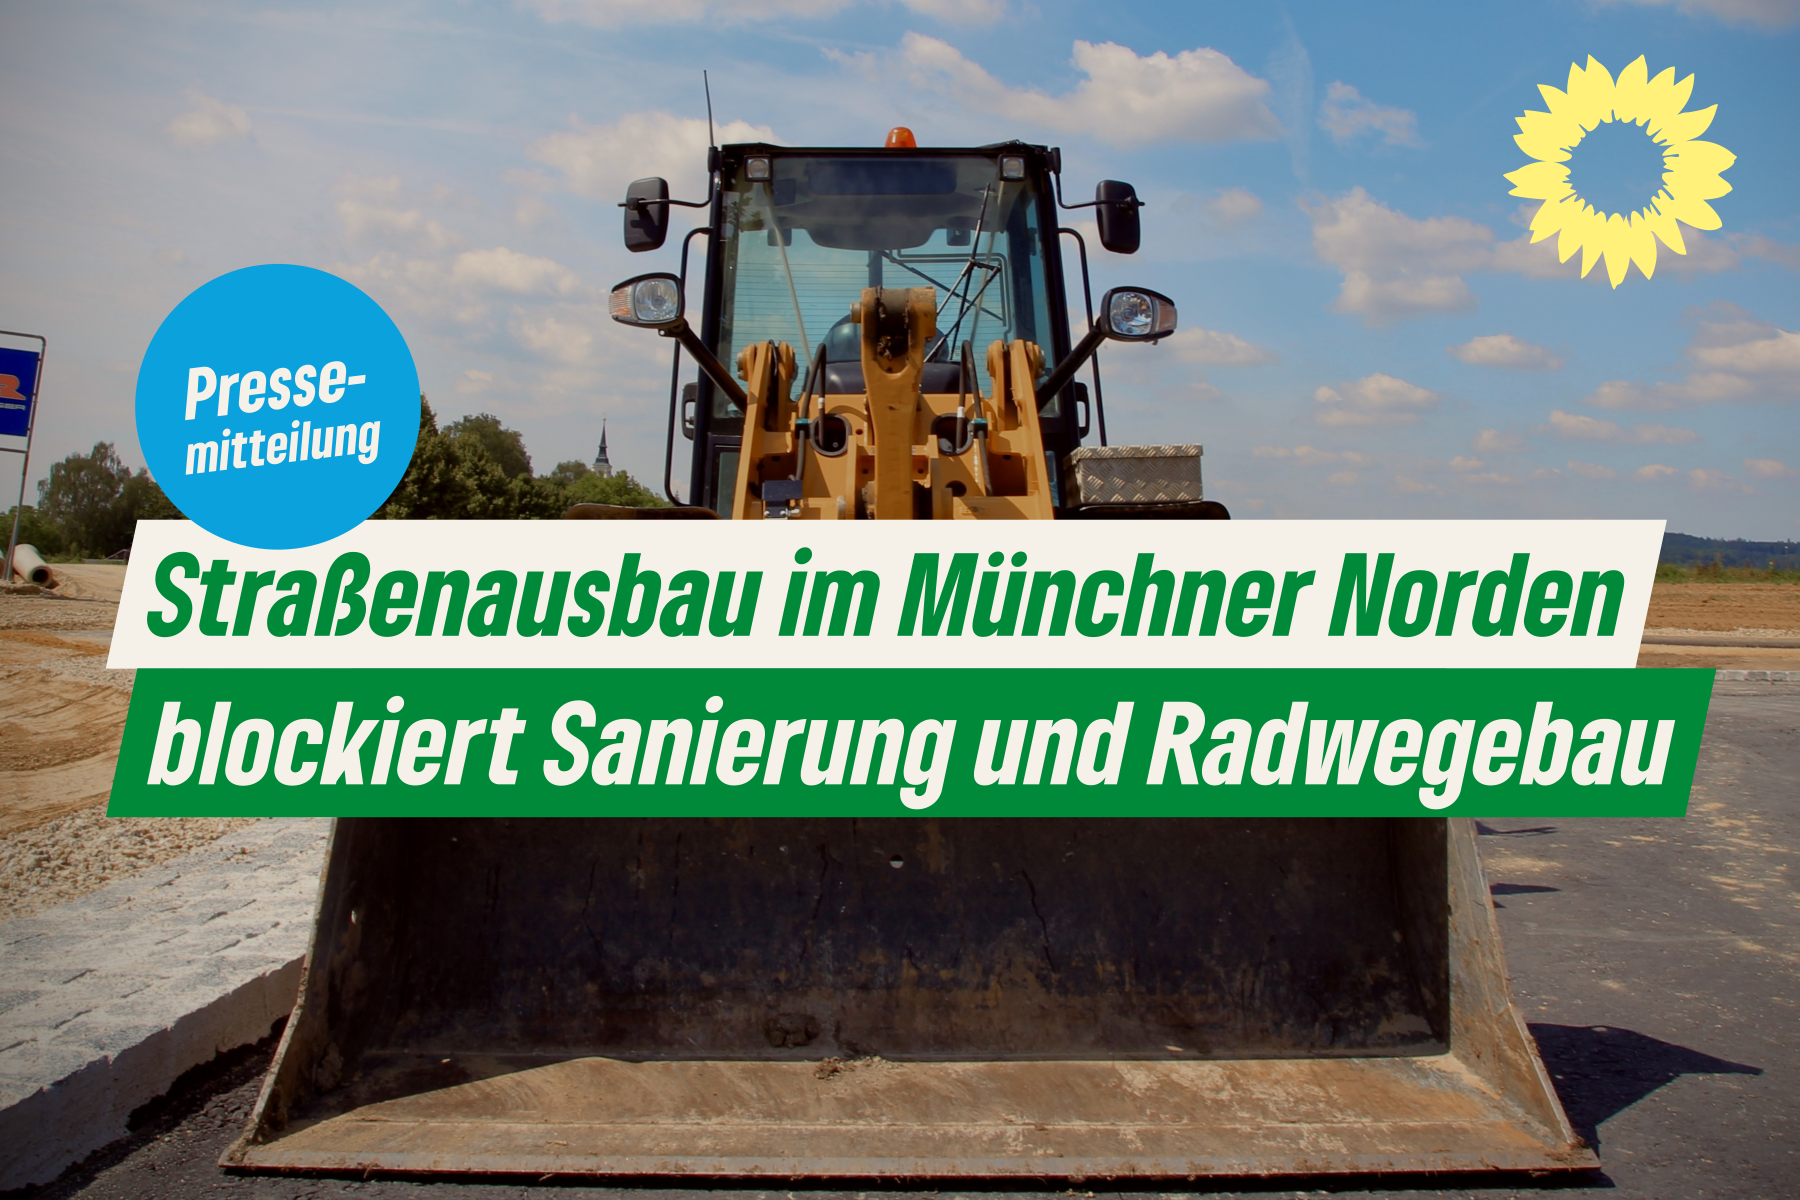 Baumaschine beim Straßenbau, davor Text: Straßenausbau im Münchner Norden blockiert Sanierung und Radwegebau